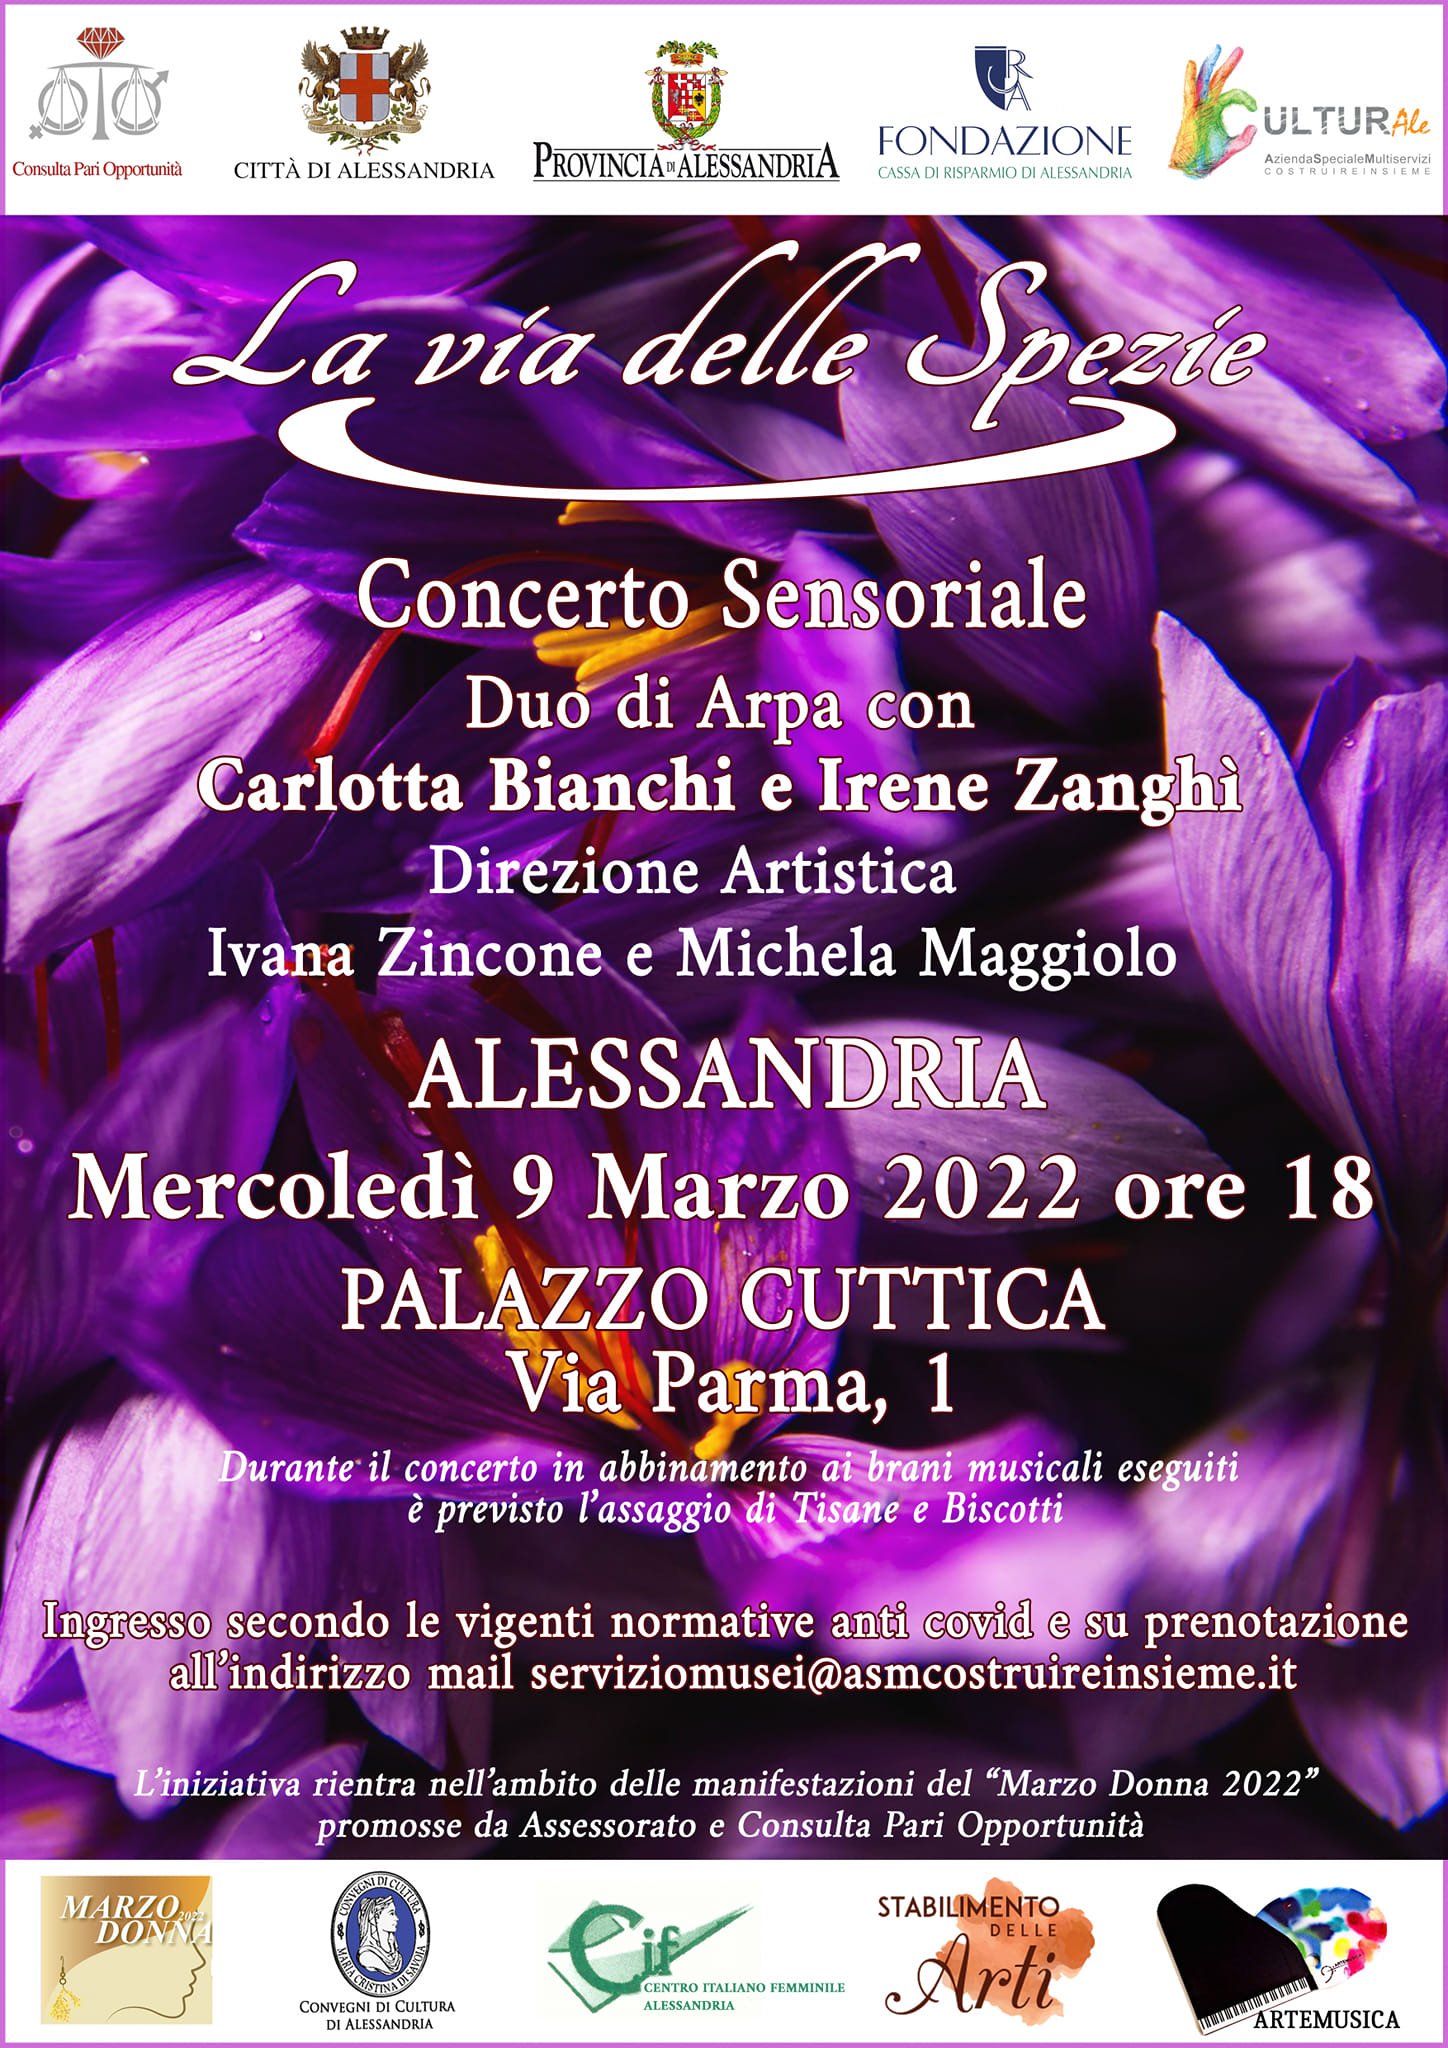 Il 9 marzo a Palazzo Cuttica il concerto sensoriale “La via delle spezie”